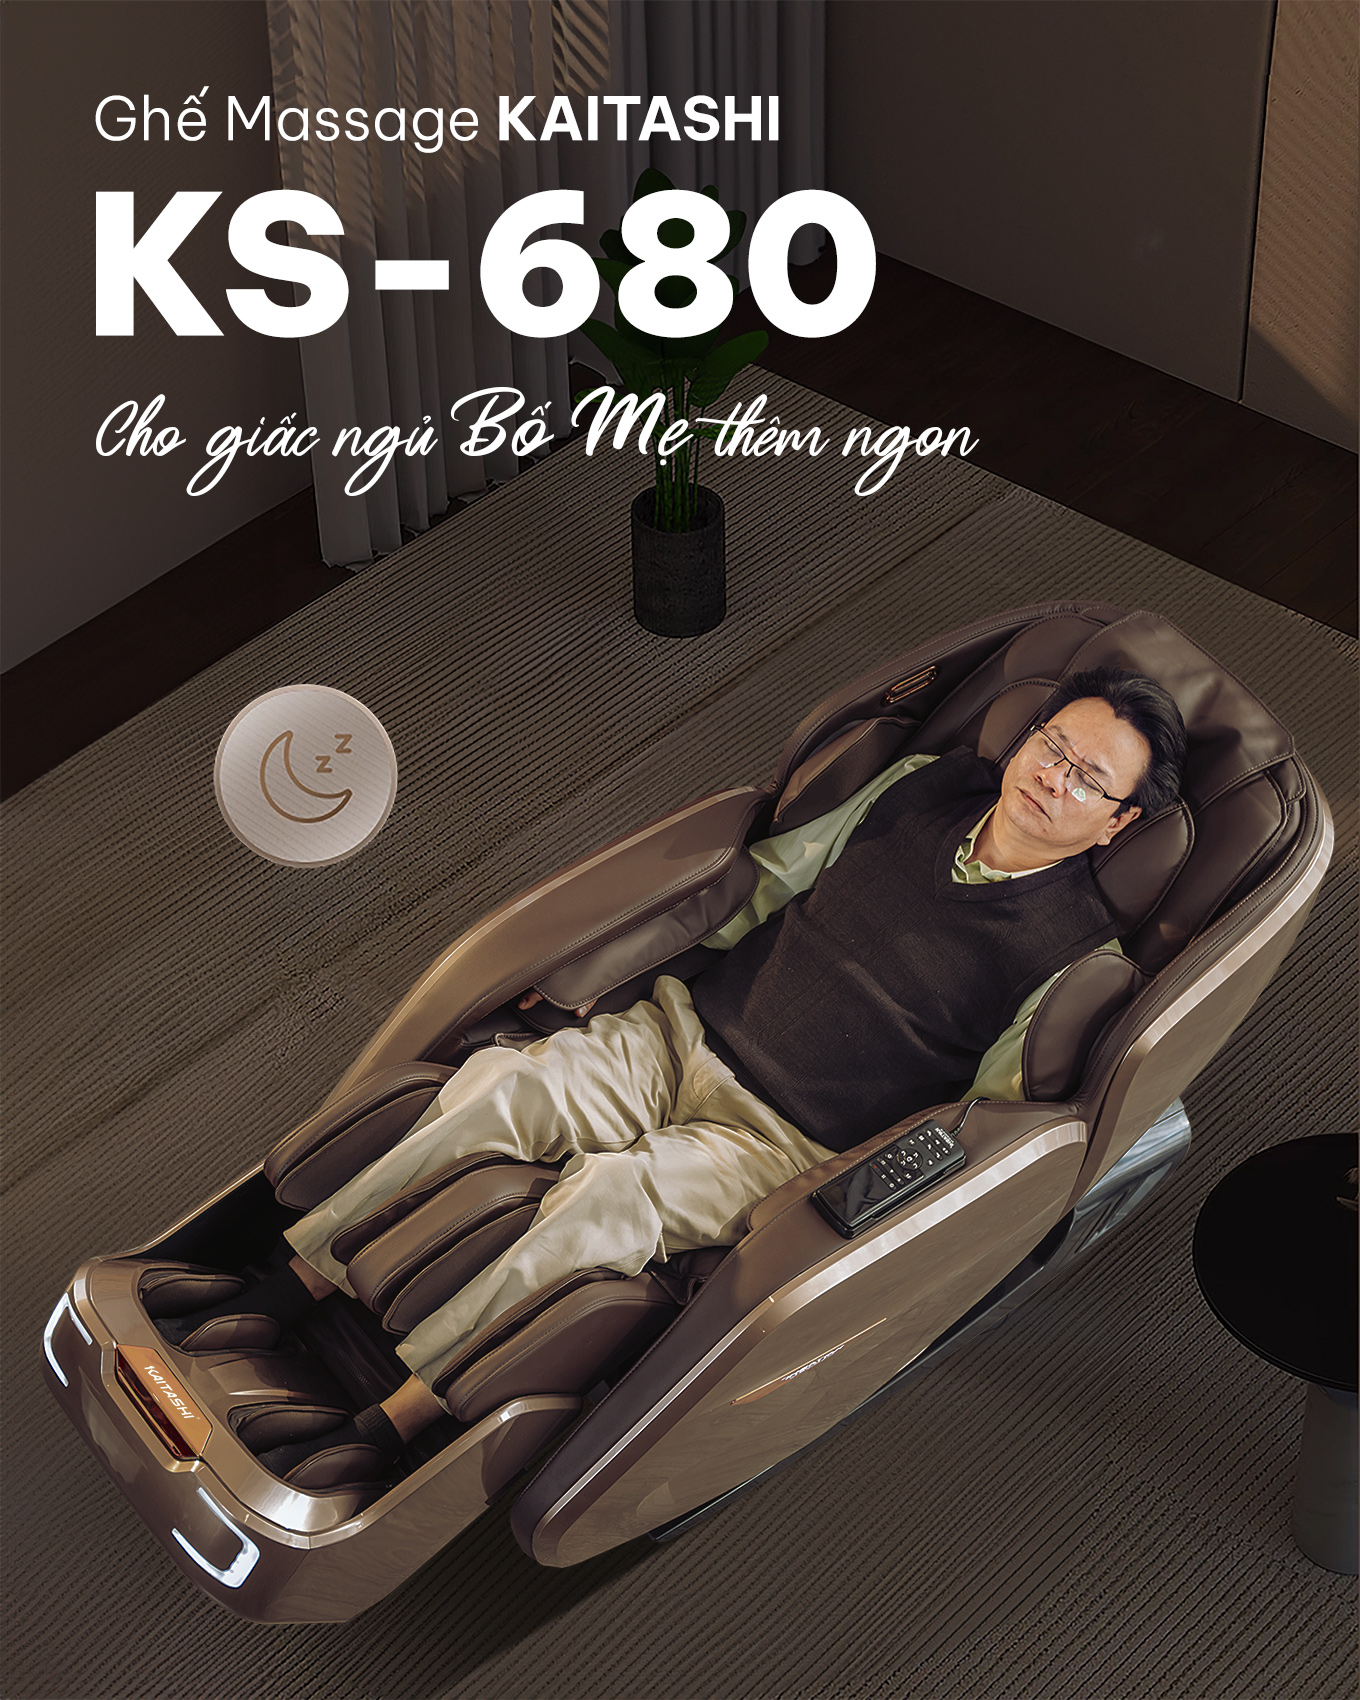 Ghế massage Kaitashi KS-680 cho bạn giấc ngủ vẹn tròn